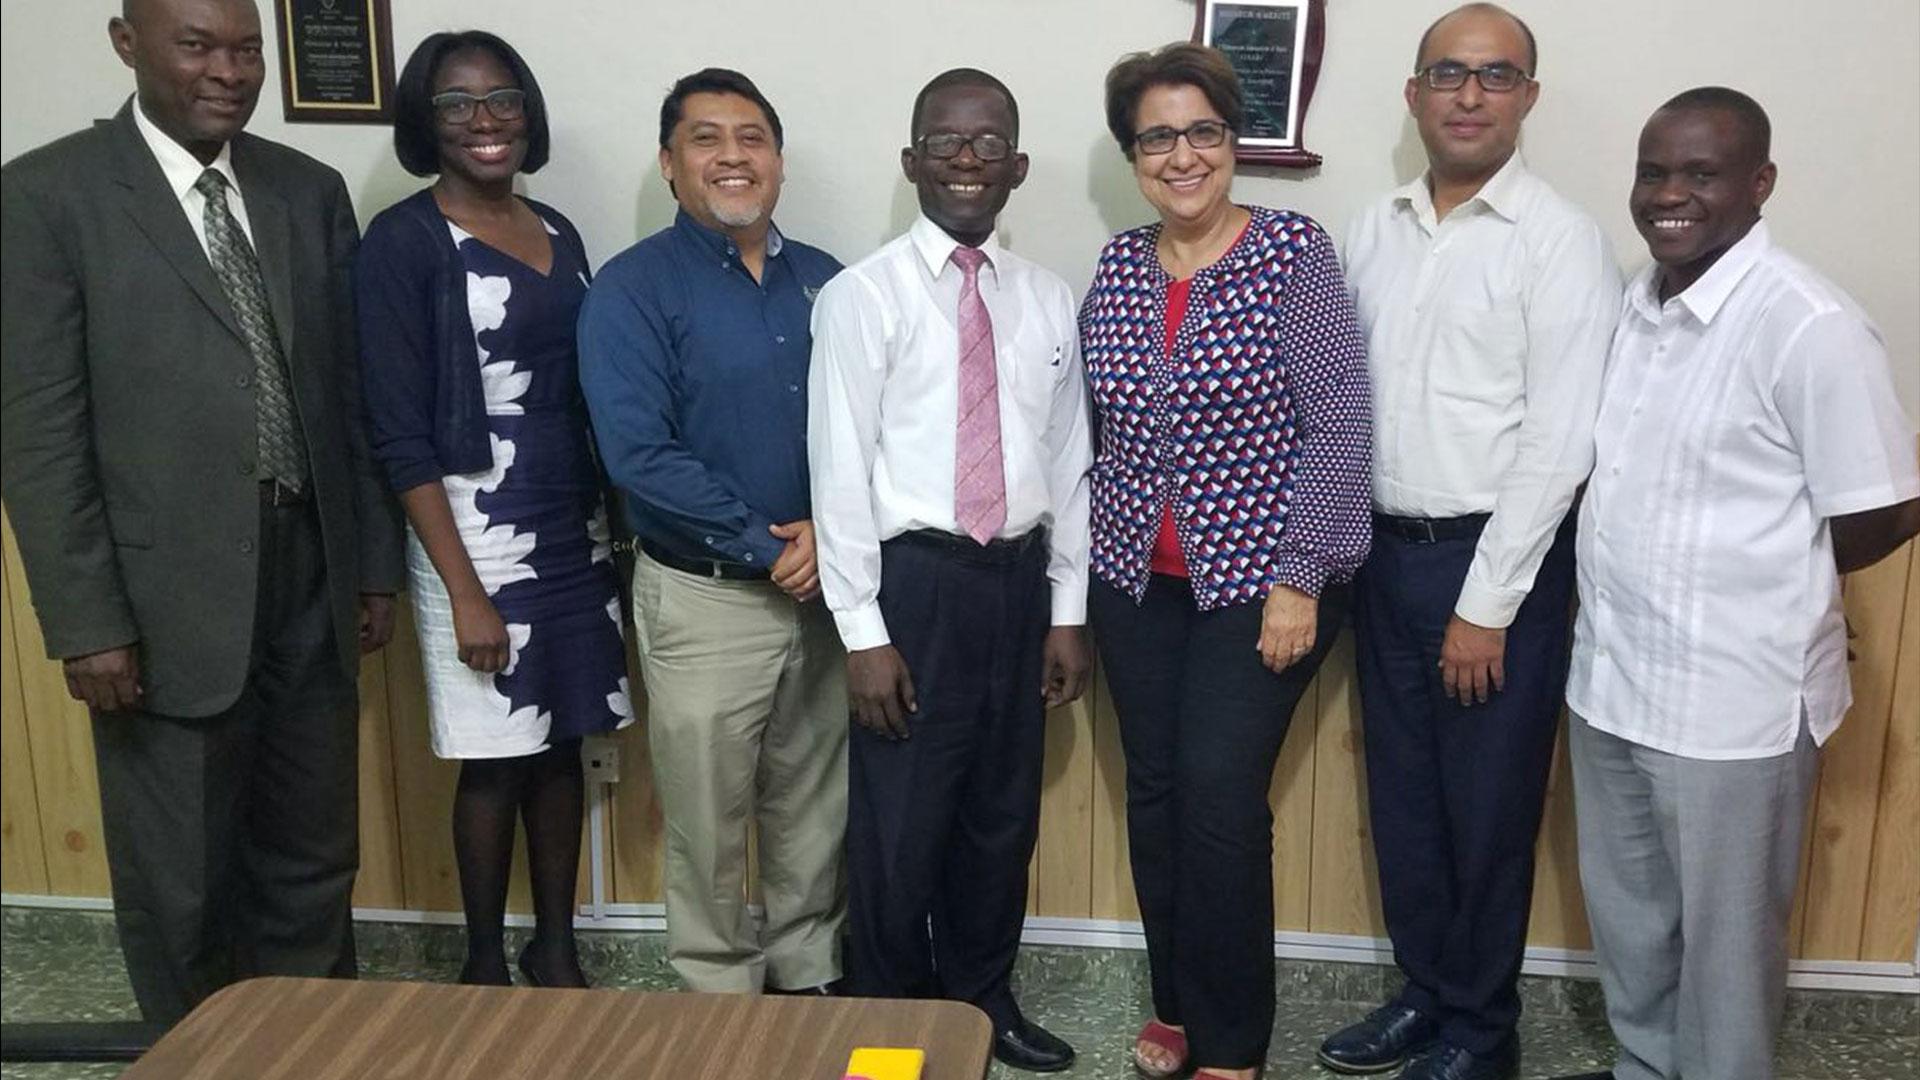 Como Universidad Promotora de la Salud se expanden acciones sociales relacionadas a la salud hacia Haití